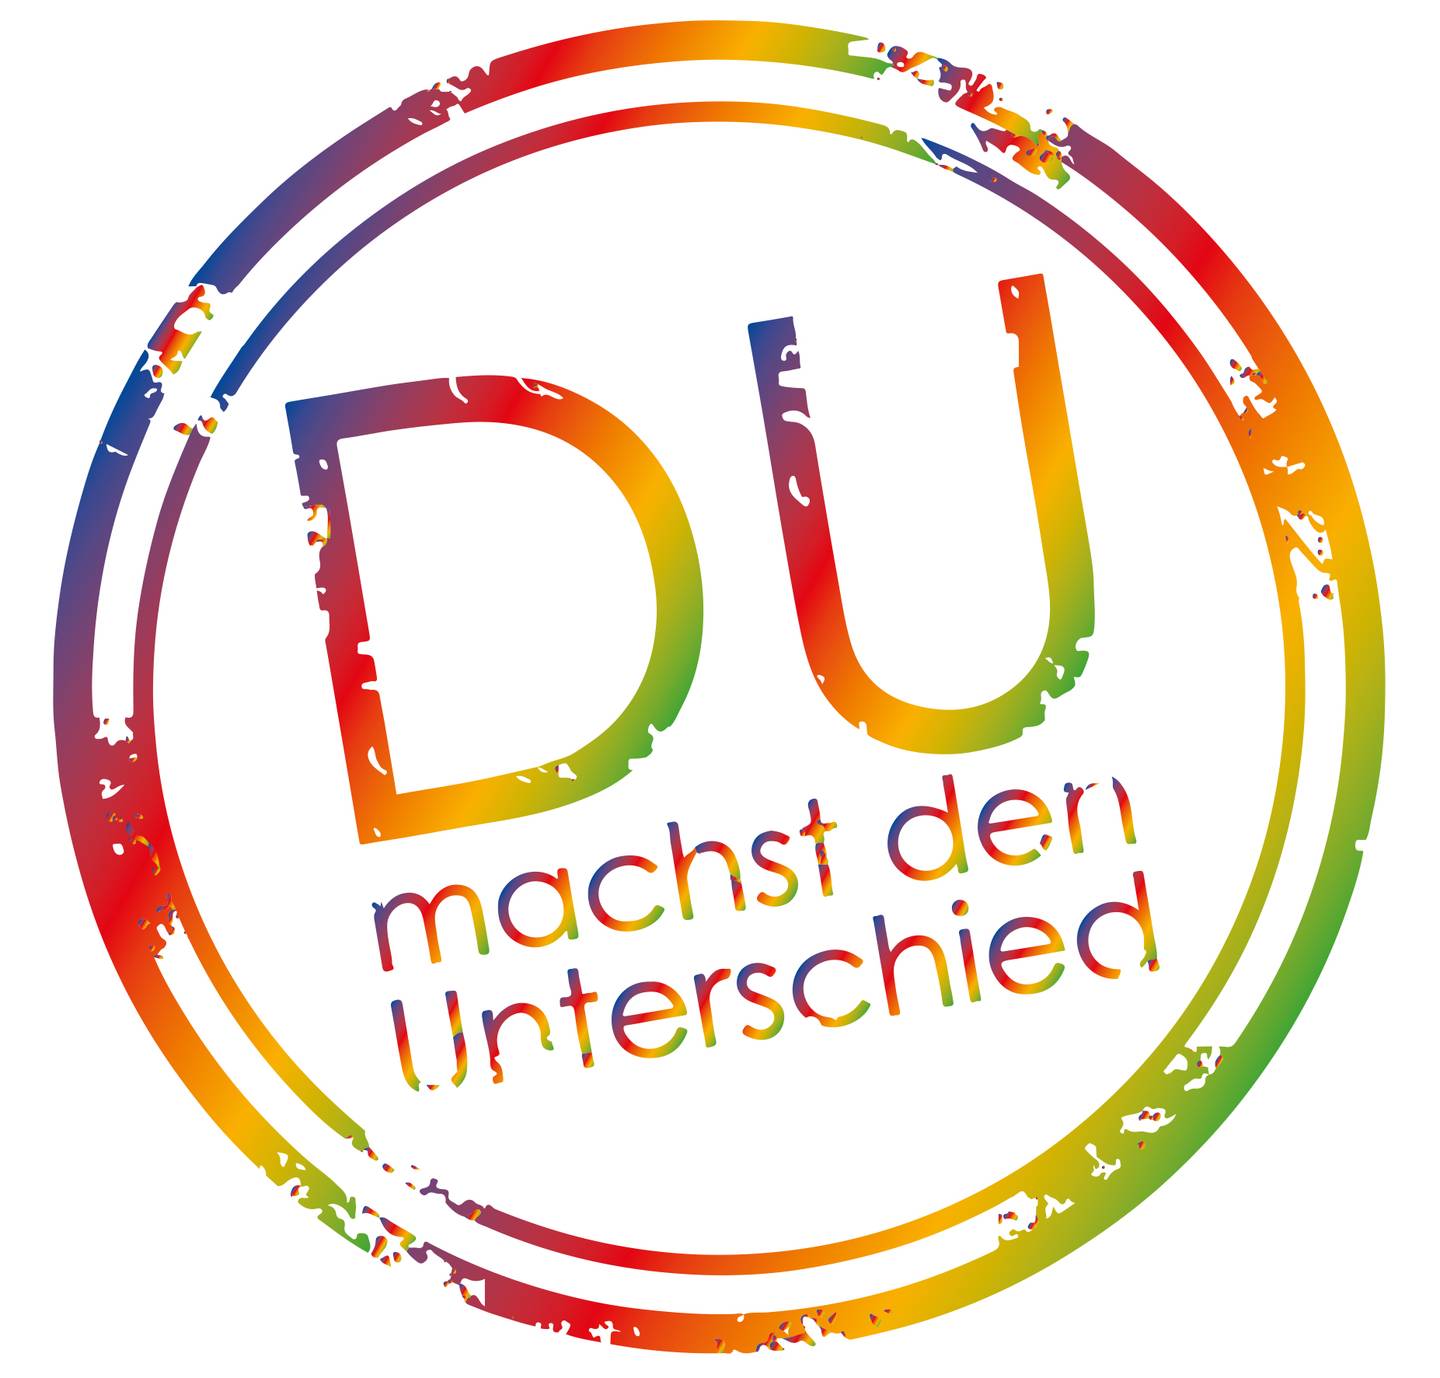 Logo von 'DU machst den Unterschied' in Form von einem regenbogenfarbenen Kreis.